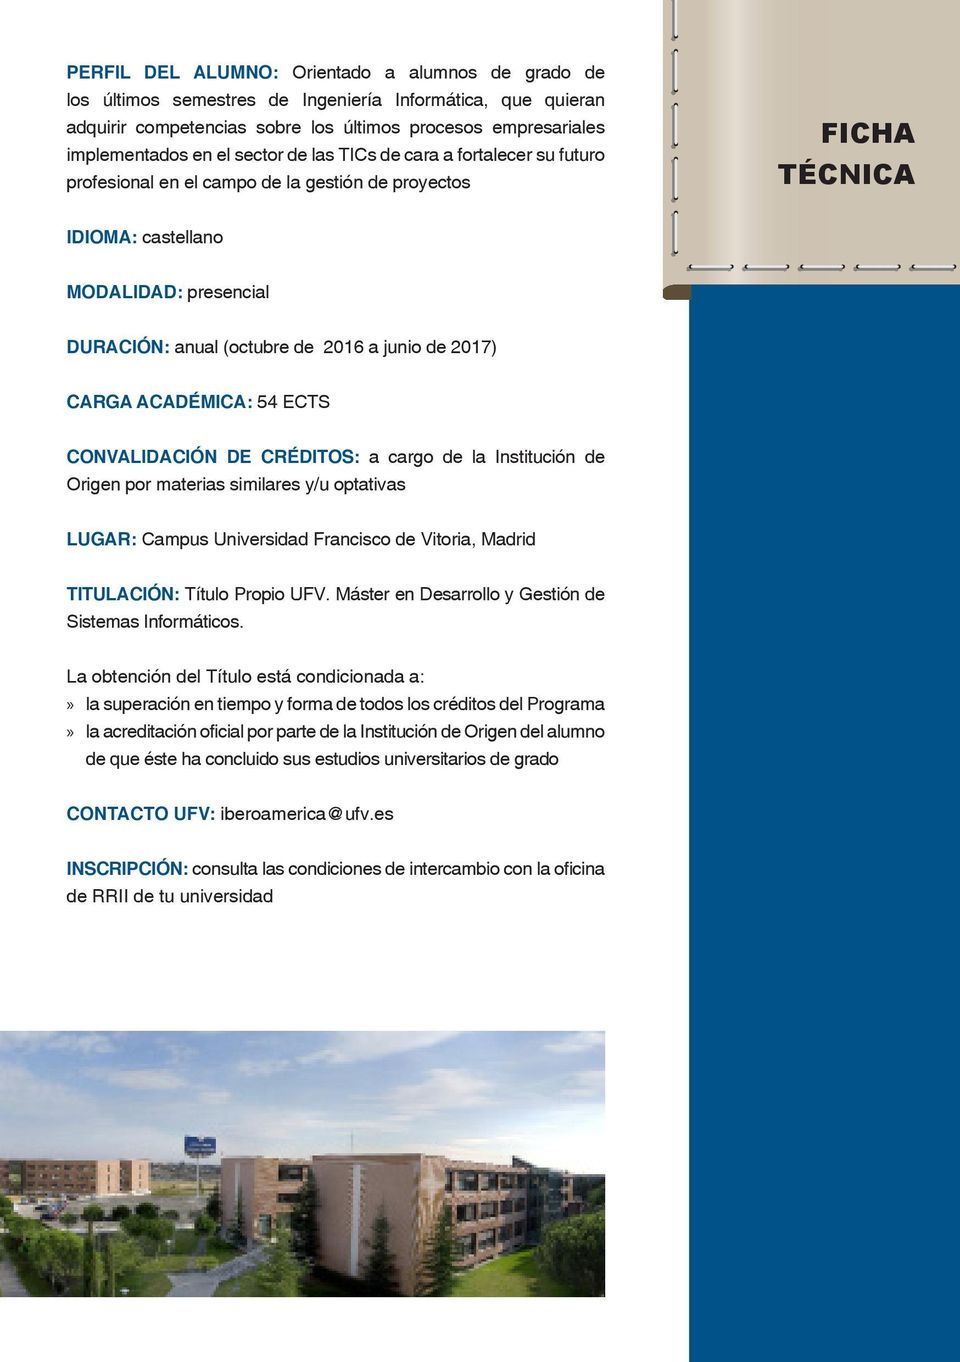 2017) CARGA ACADÉMICA: 54 ECTS CONVALIDACIÓN DE CRÉDITOS: a cargo de la Institución de Origen por materias similares y/u optativas LUGAR: Campus Universidad Francisco de Vitoria, Madrid TITULACIÓN: